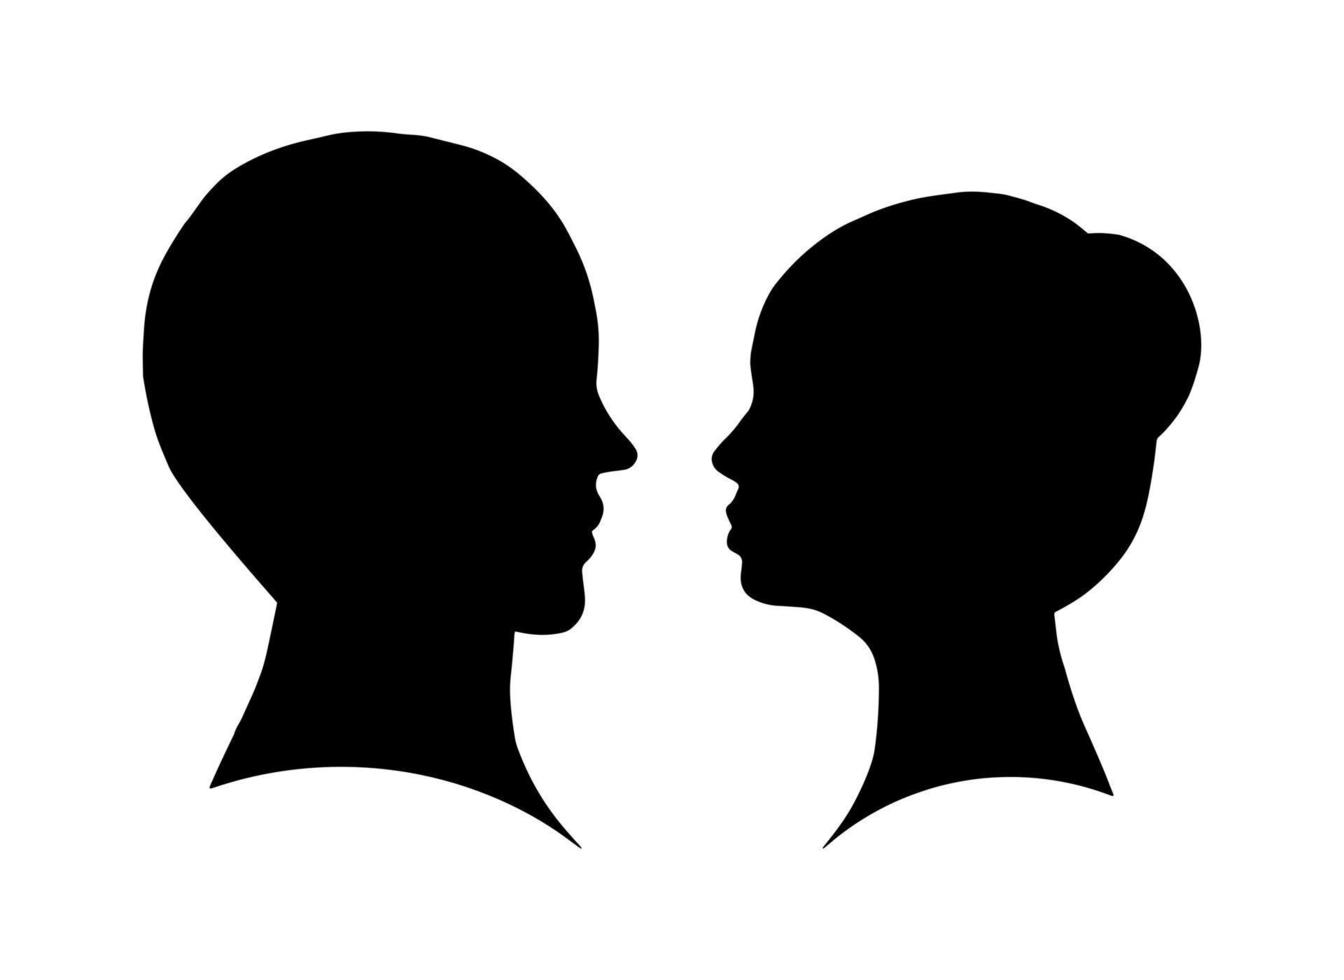 forme d'ombre de tête de couple plat femme et homme isolé sur fond blanc. illustration de concept d'amour de vecteur simple.